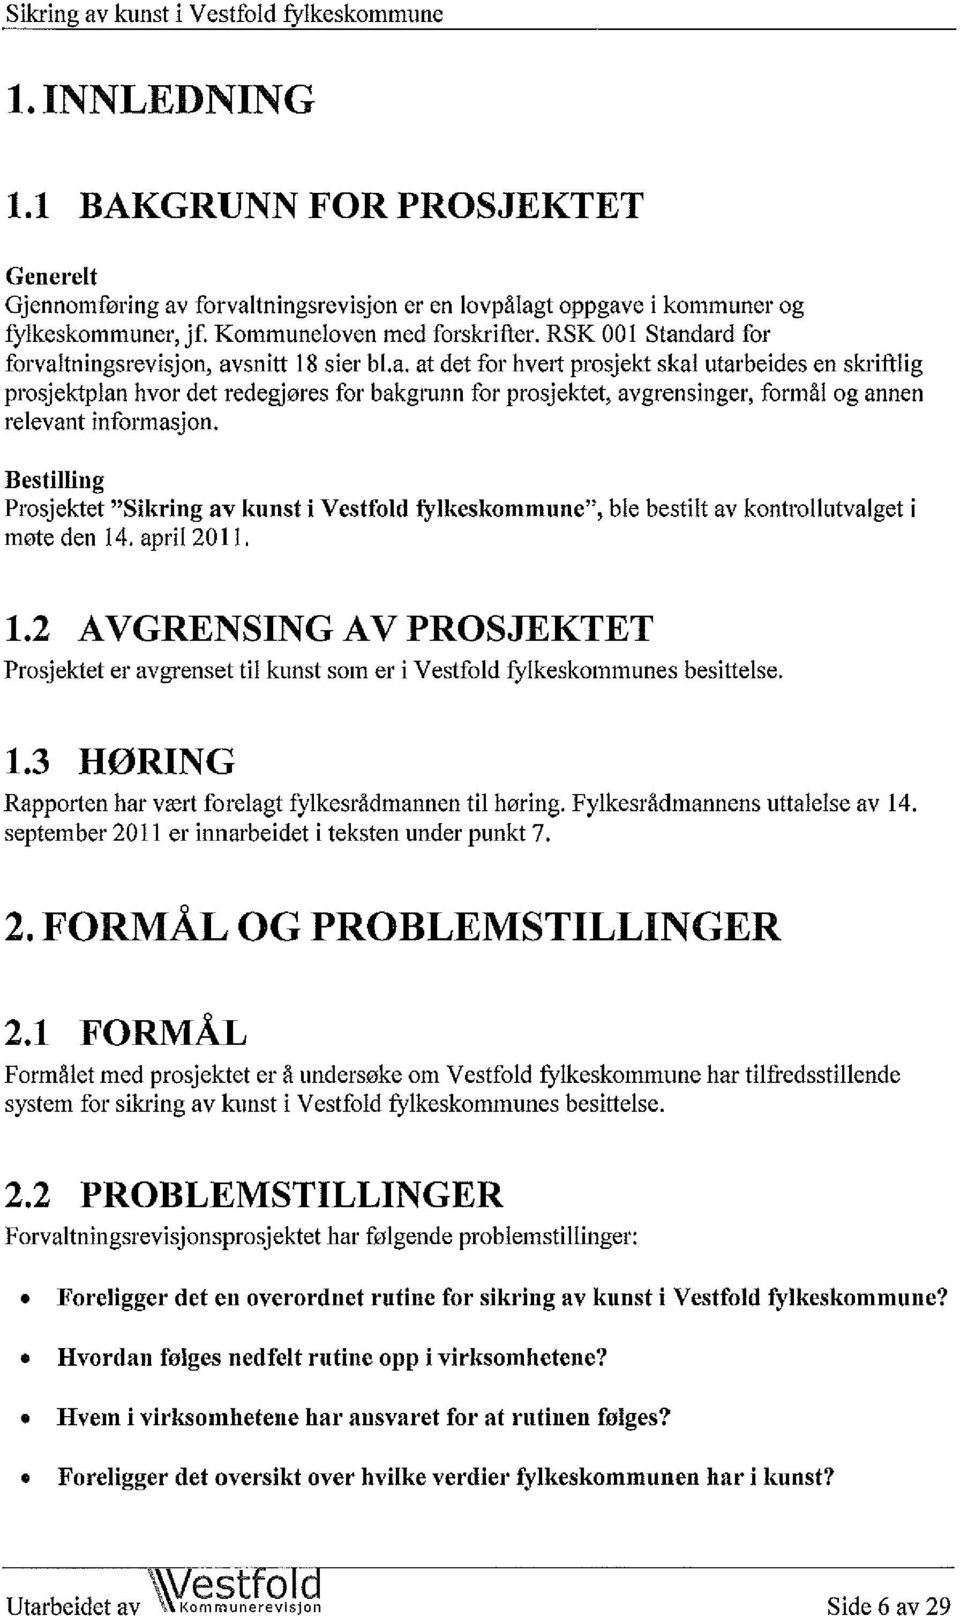 Bestilling Prosjektet "Sikring av kunst i Vestfold fylkeskommune", møte den 14. april 2011. ble bestilt av kontrollutvalget i 1.